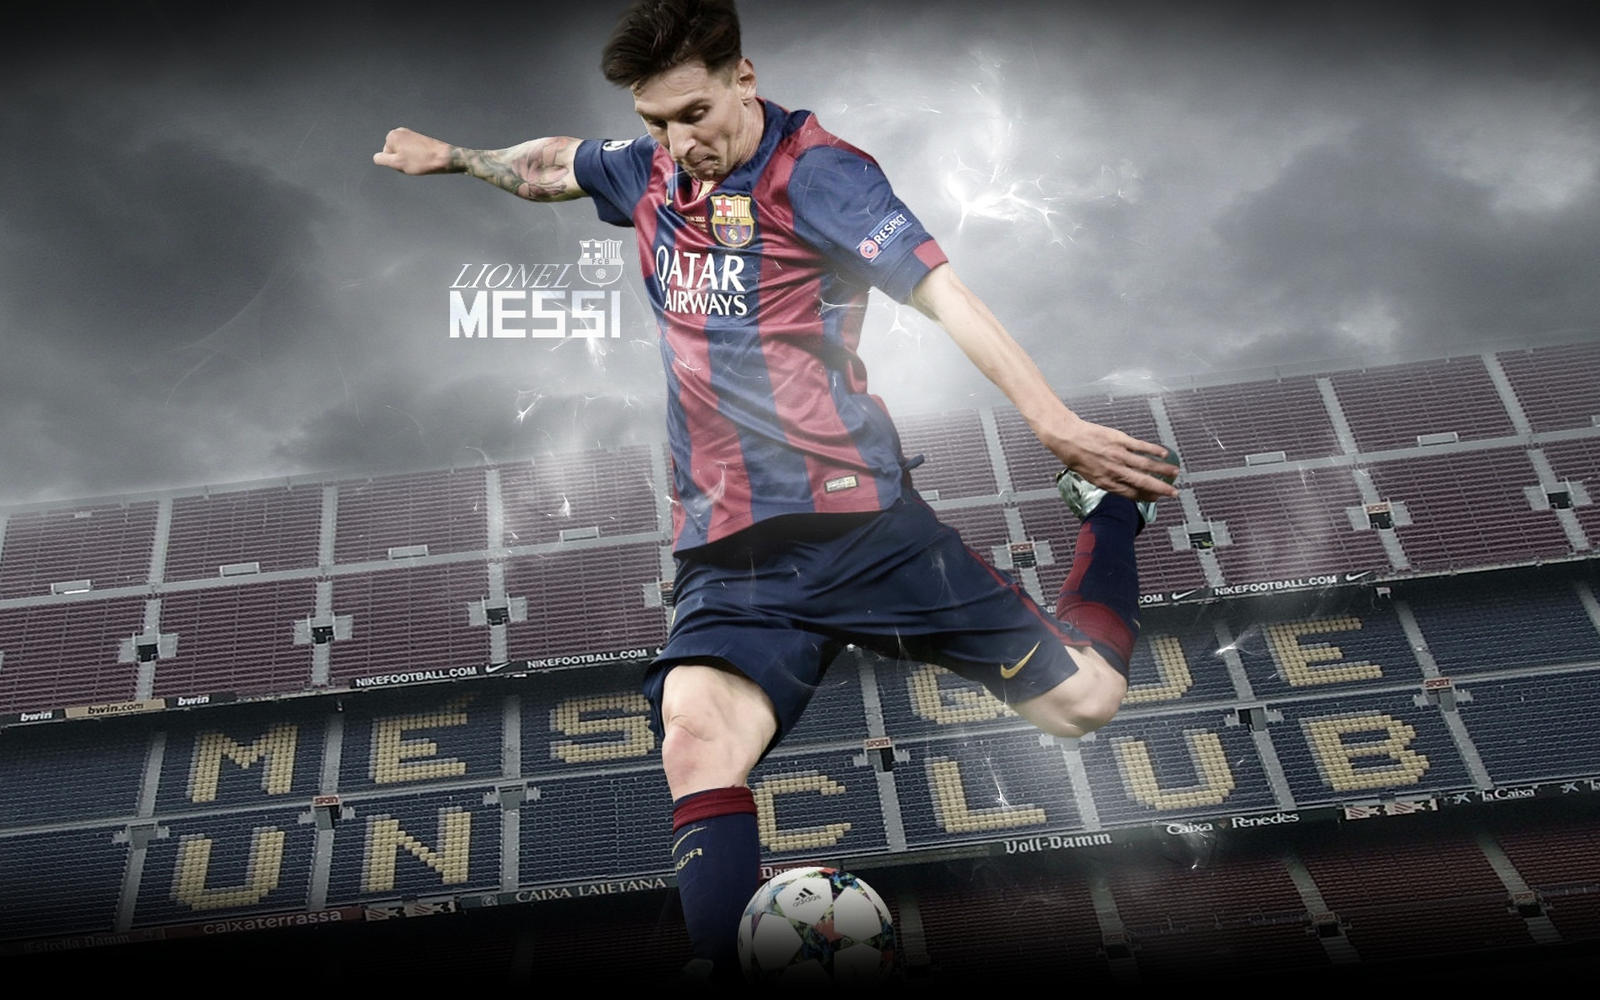 Lionel Messi Wallpaper 2015/16 by ChrisRamos4GFX on DeviantArt - Nếu bạn yêu thích Messi và Barcelona, thì đây chắc chắn là một tác phẩm nghệ thuật bóng đá hoàn hảo để tôn vinh ông vua của La Liga. Sự khéo léo trong việc xử lý bóng của Messi được tái hiện đầy tinh tế trên nền tảng hình ảnh đầy sống động và ấn tượng.